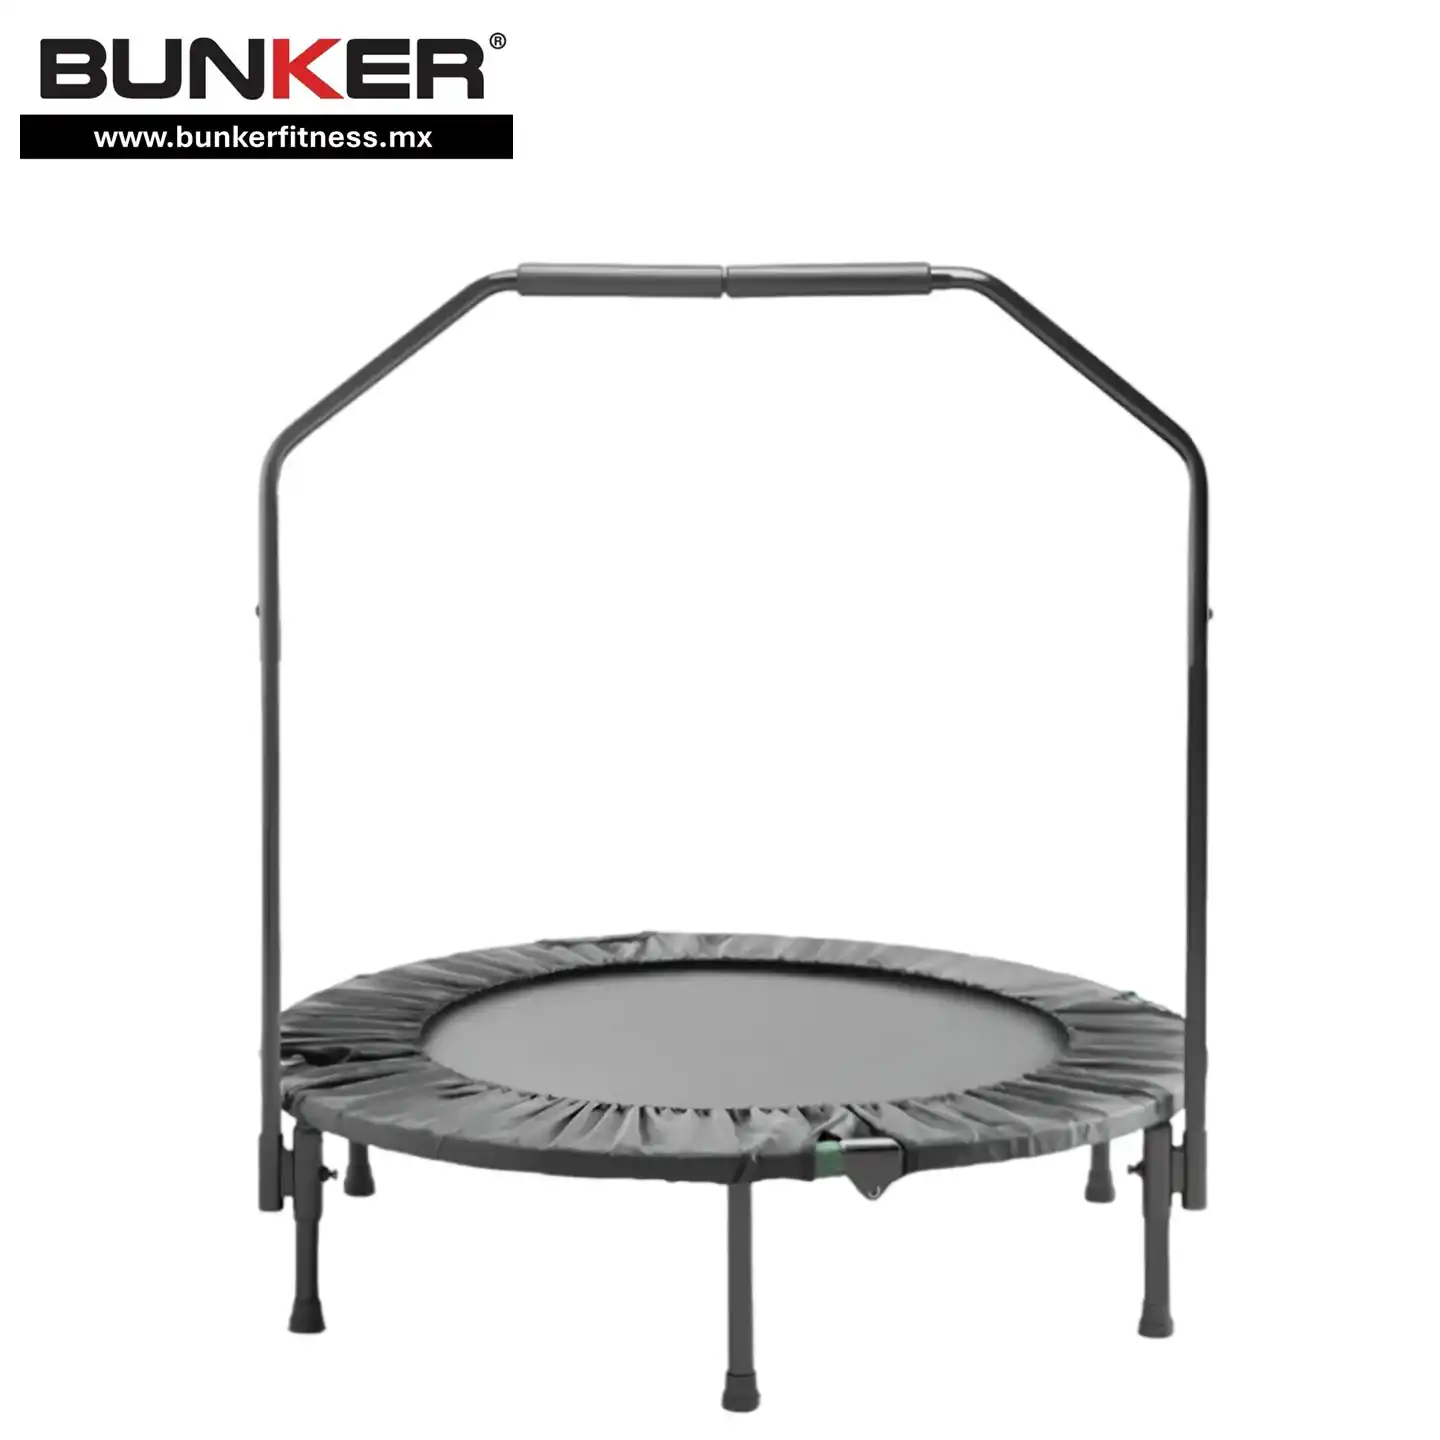 trampolin con barra estabilizadora para ejercicio bunker fitness para ejercicio y gimnasio en casa bunker gym bunker fitness